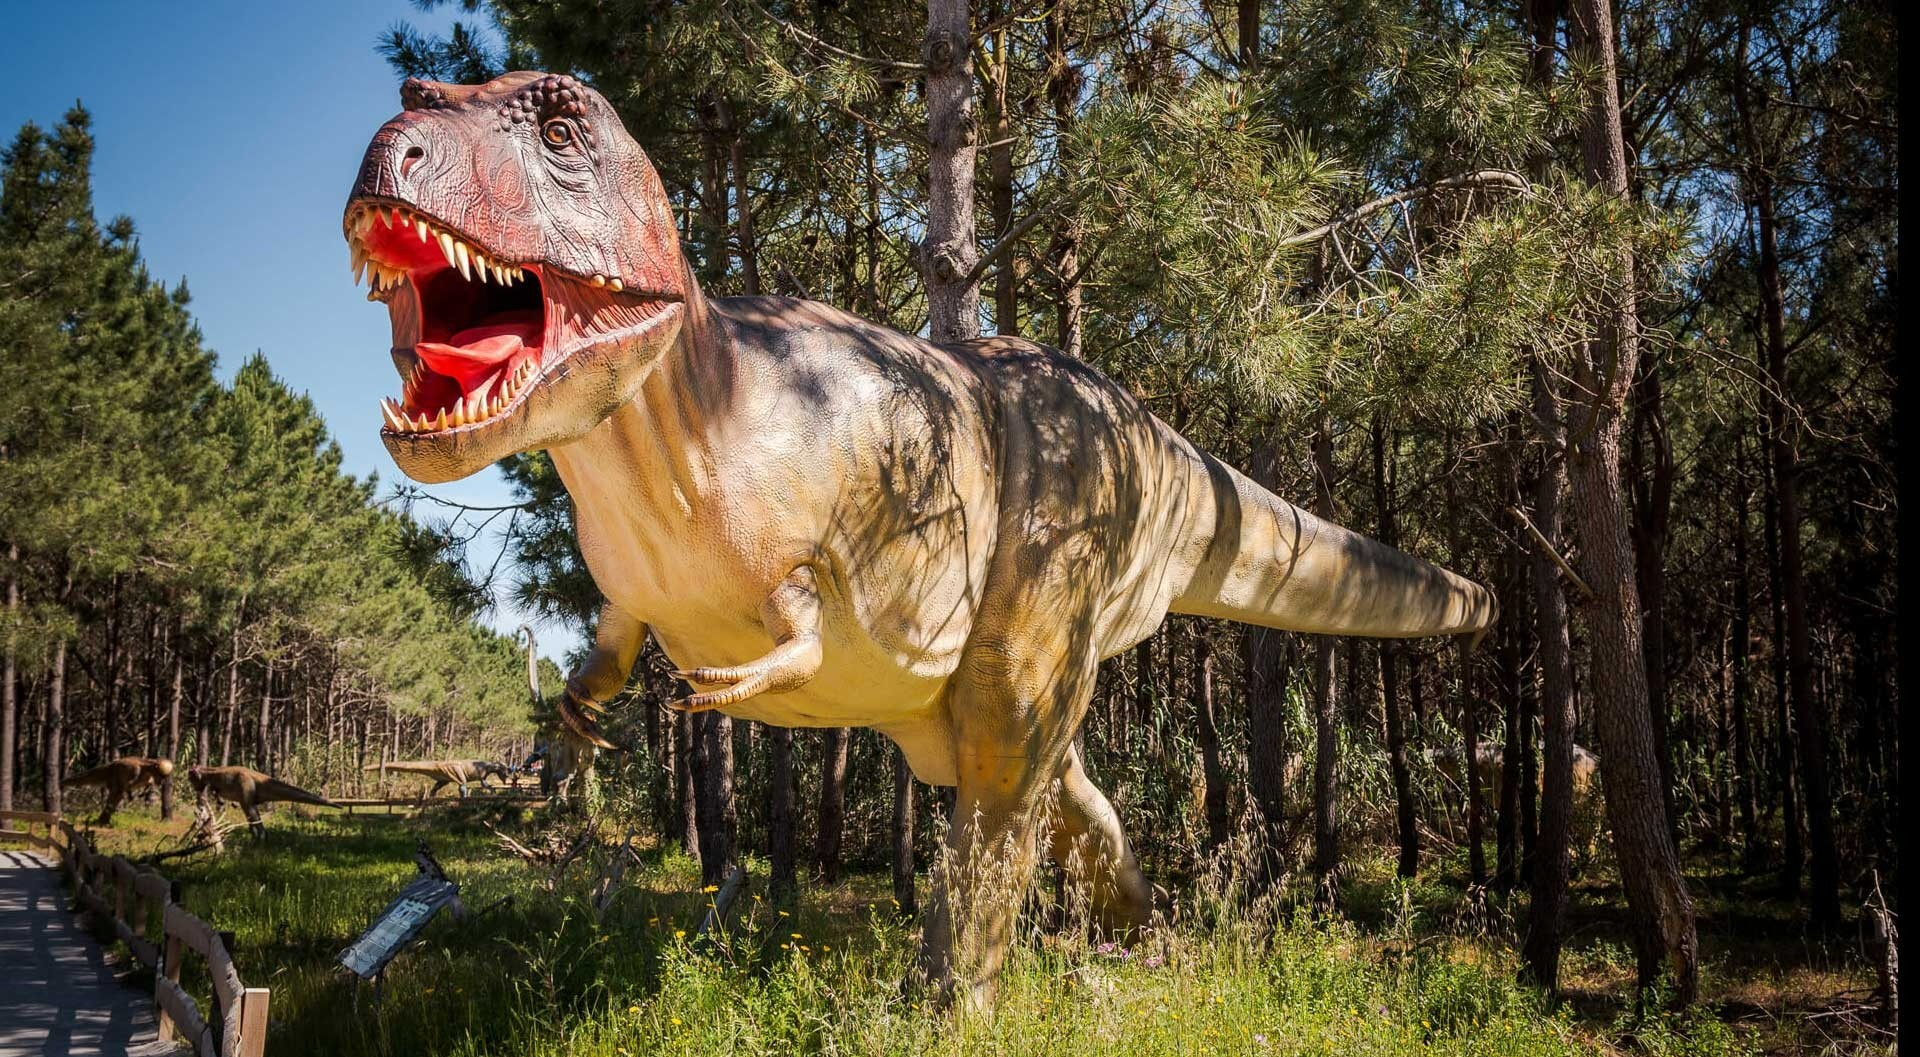 Parque dos Dinossauros - Morphle em Português